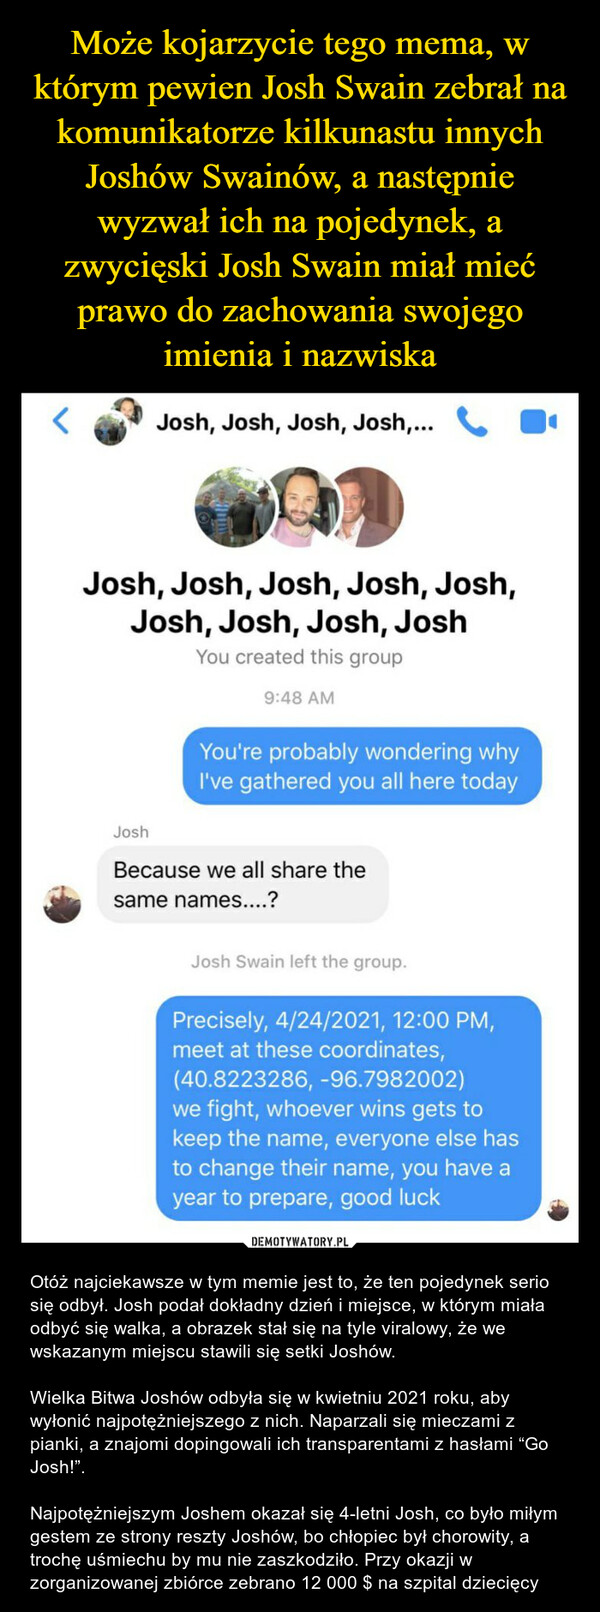 Może kojarzycie tego mema, w którym pewien Josh Swain zebrał na komunikatorze kilkunastu innych Joshów Swainów, a następnie wyzwał ich na pojedynek, a zwycięski Josh Swain miał mieć prawo do zachowania swojego imienia i nazwiska